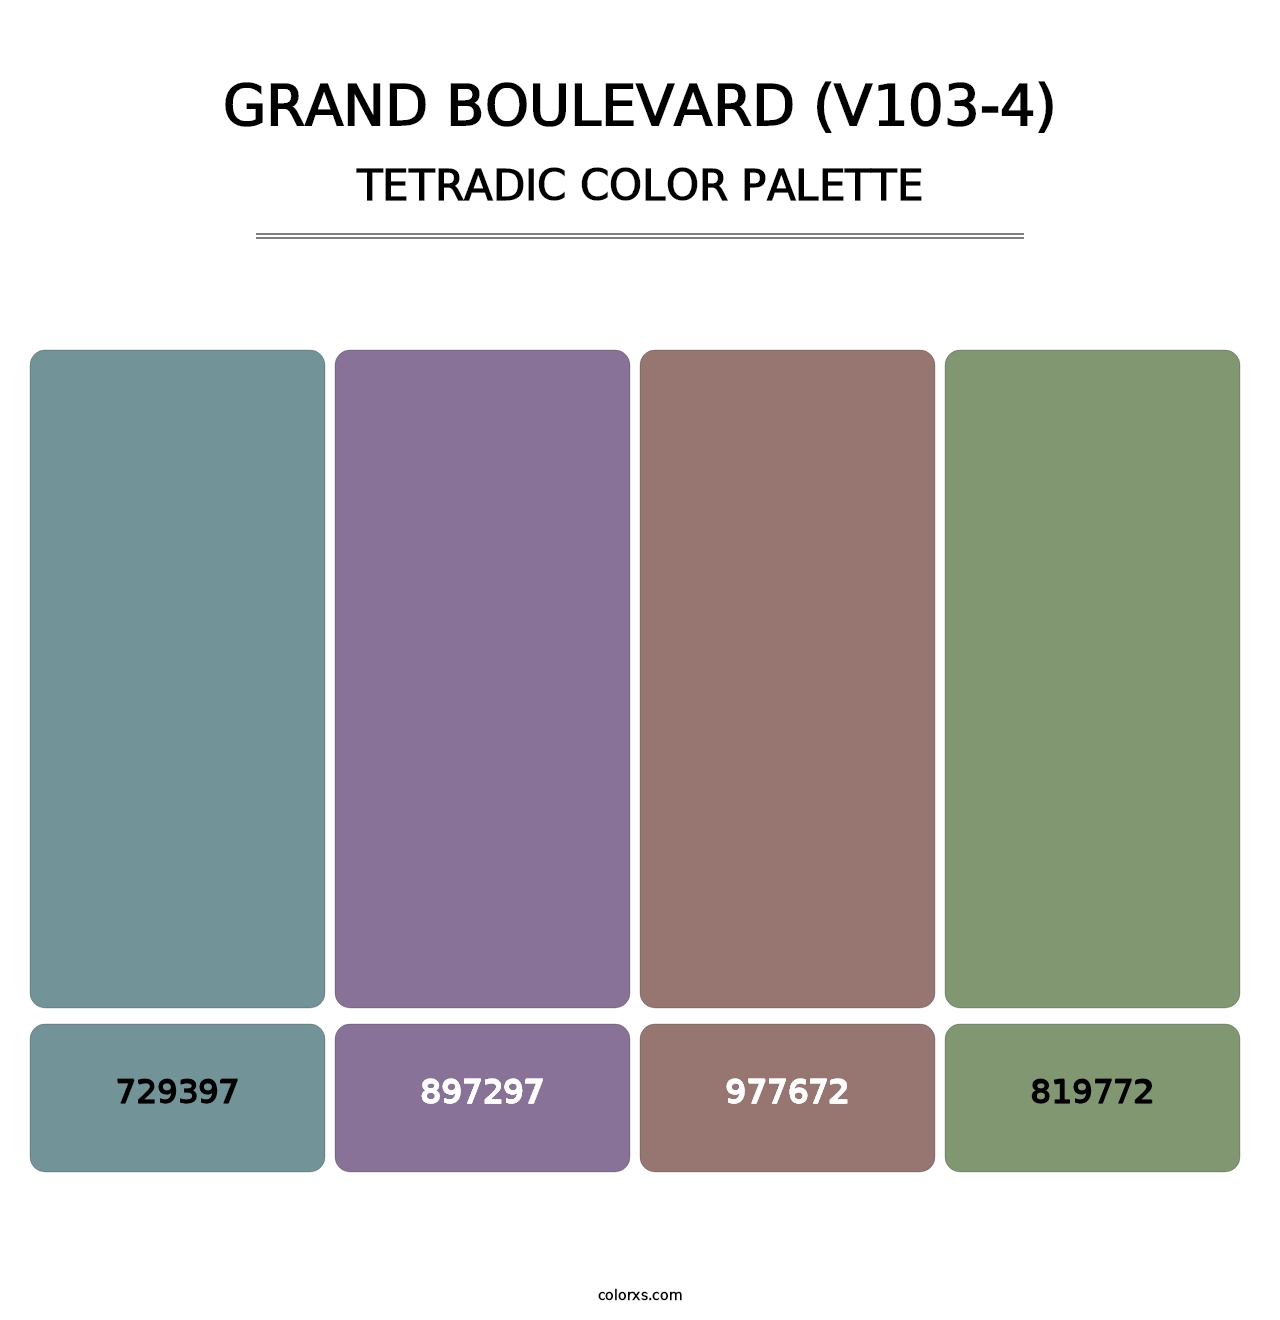 Grand Boulevard (V103-4) - Tetradic Color Palette